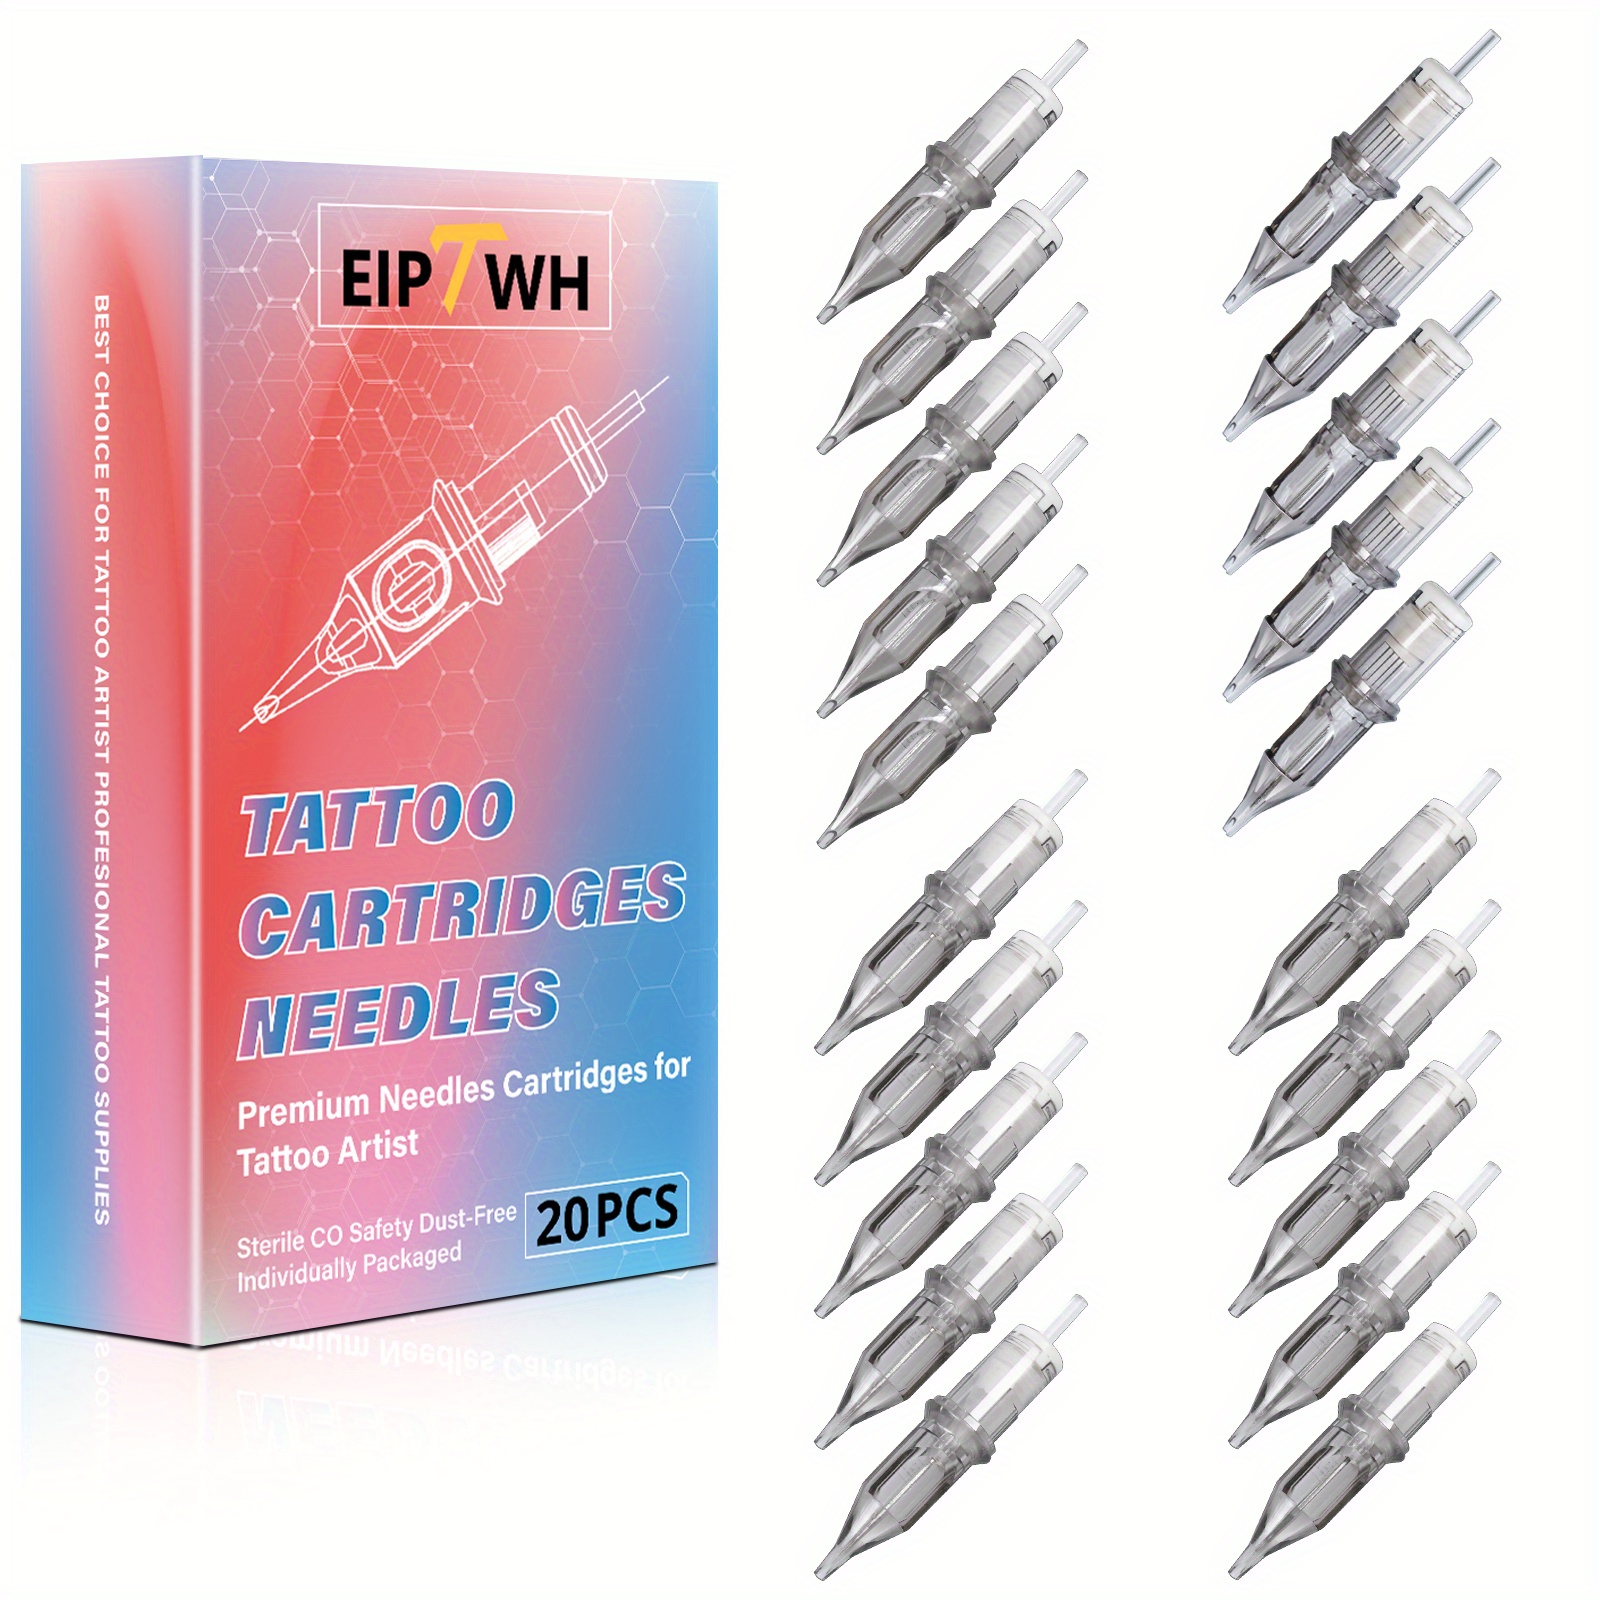 

Eiptwh Premium Tattoo Needles Catridges, 20pcs Round Magnum Disposables Tattoo Cartridges Needles For Tattoo Gun, Magnum Tattoo Needles With Membrane